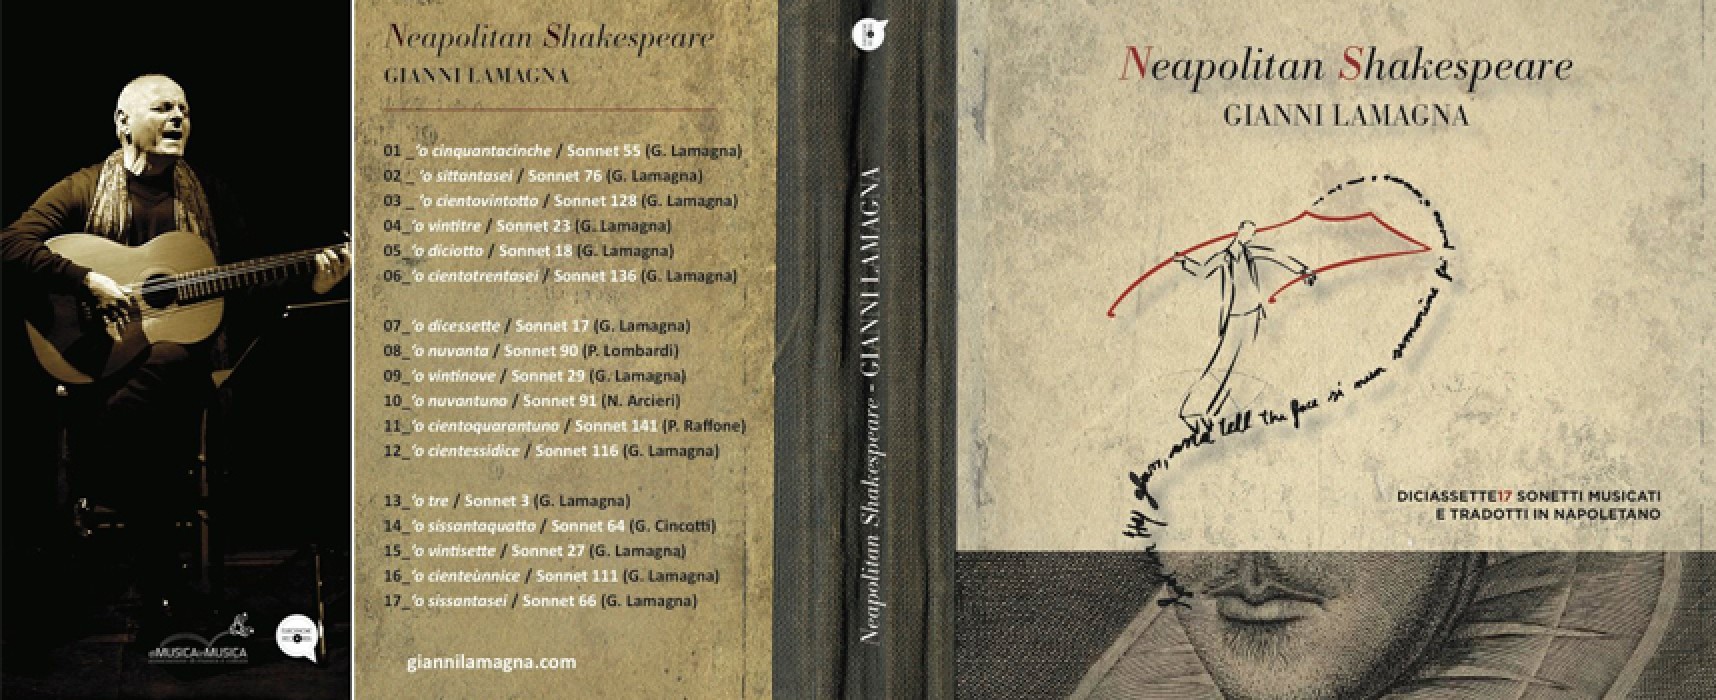 Neapolitan Shakespeare, originale progetto musicale con una matrice biscegliese